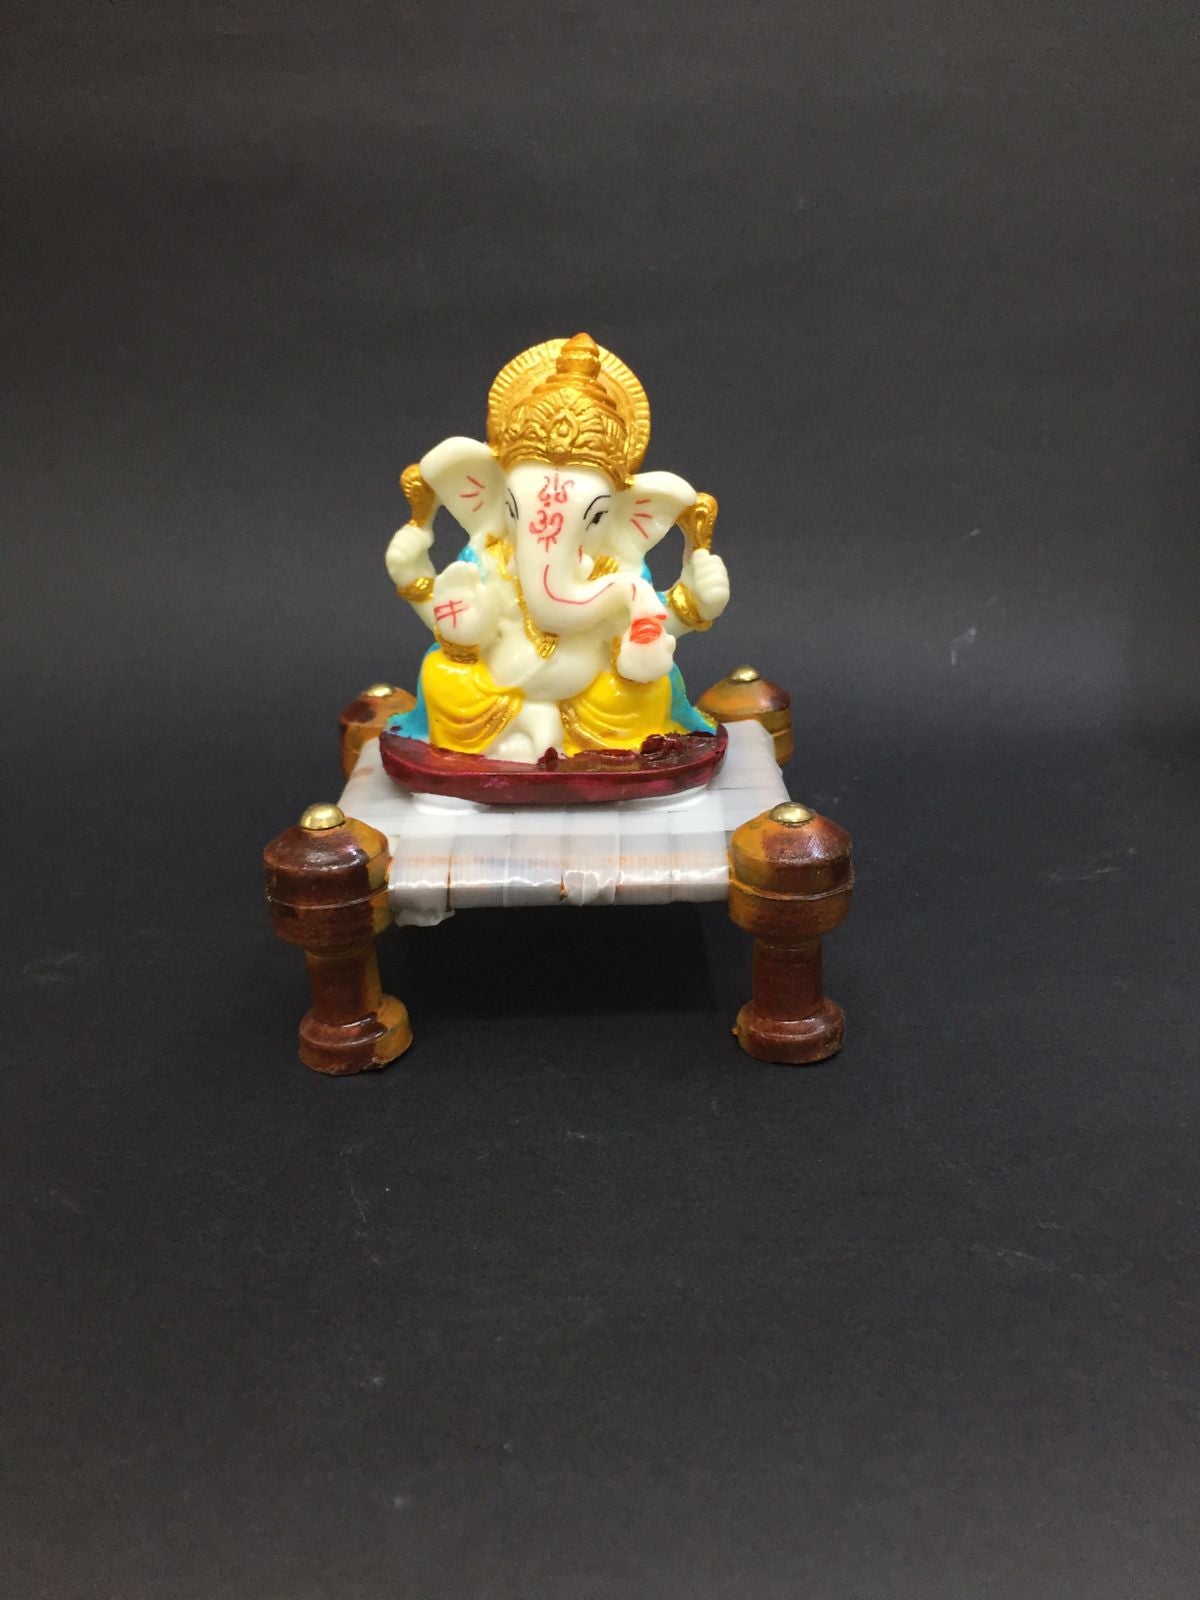 Crown Ganesh On Khat Sweet Spiritual Art Gifting's Vastu Marriage Tamrapatra